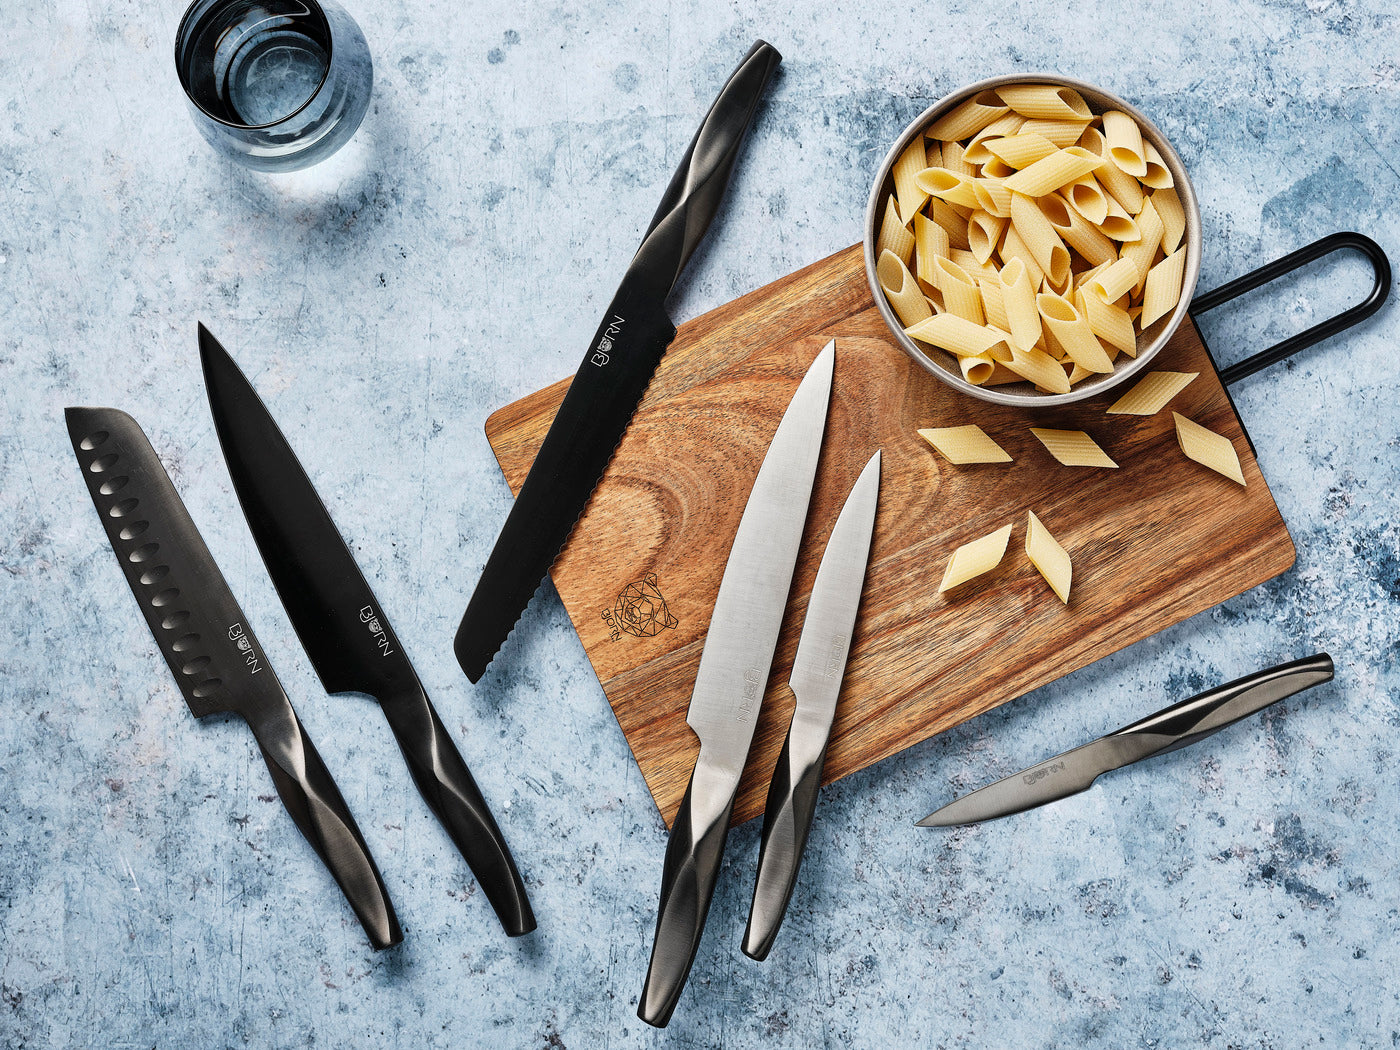 Bloc couteaux de cuisine ERLING IMATRA - 7 pièces